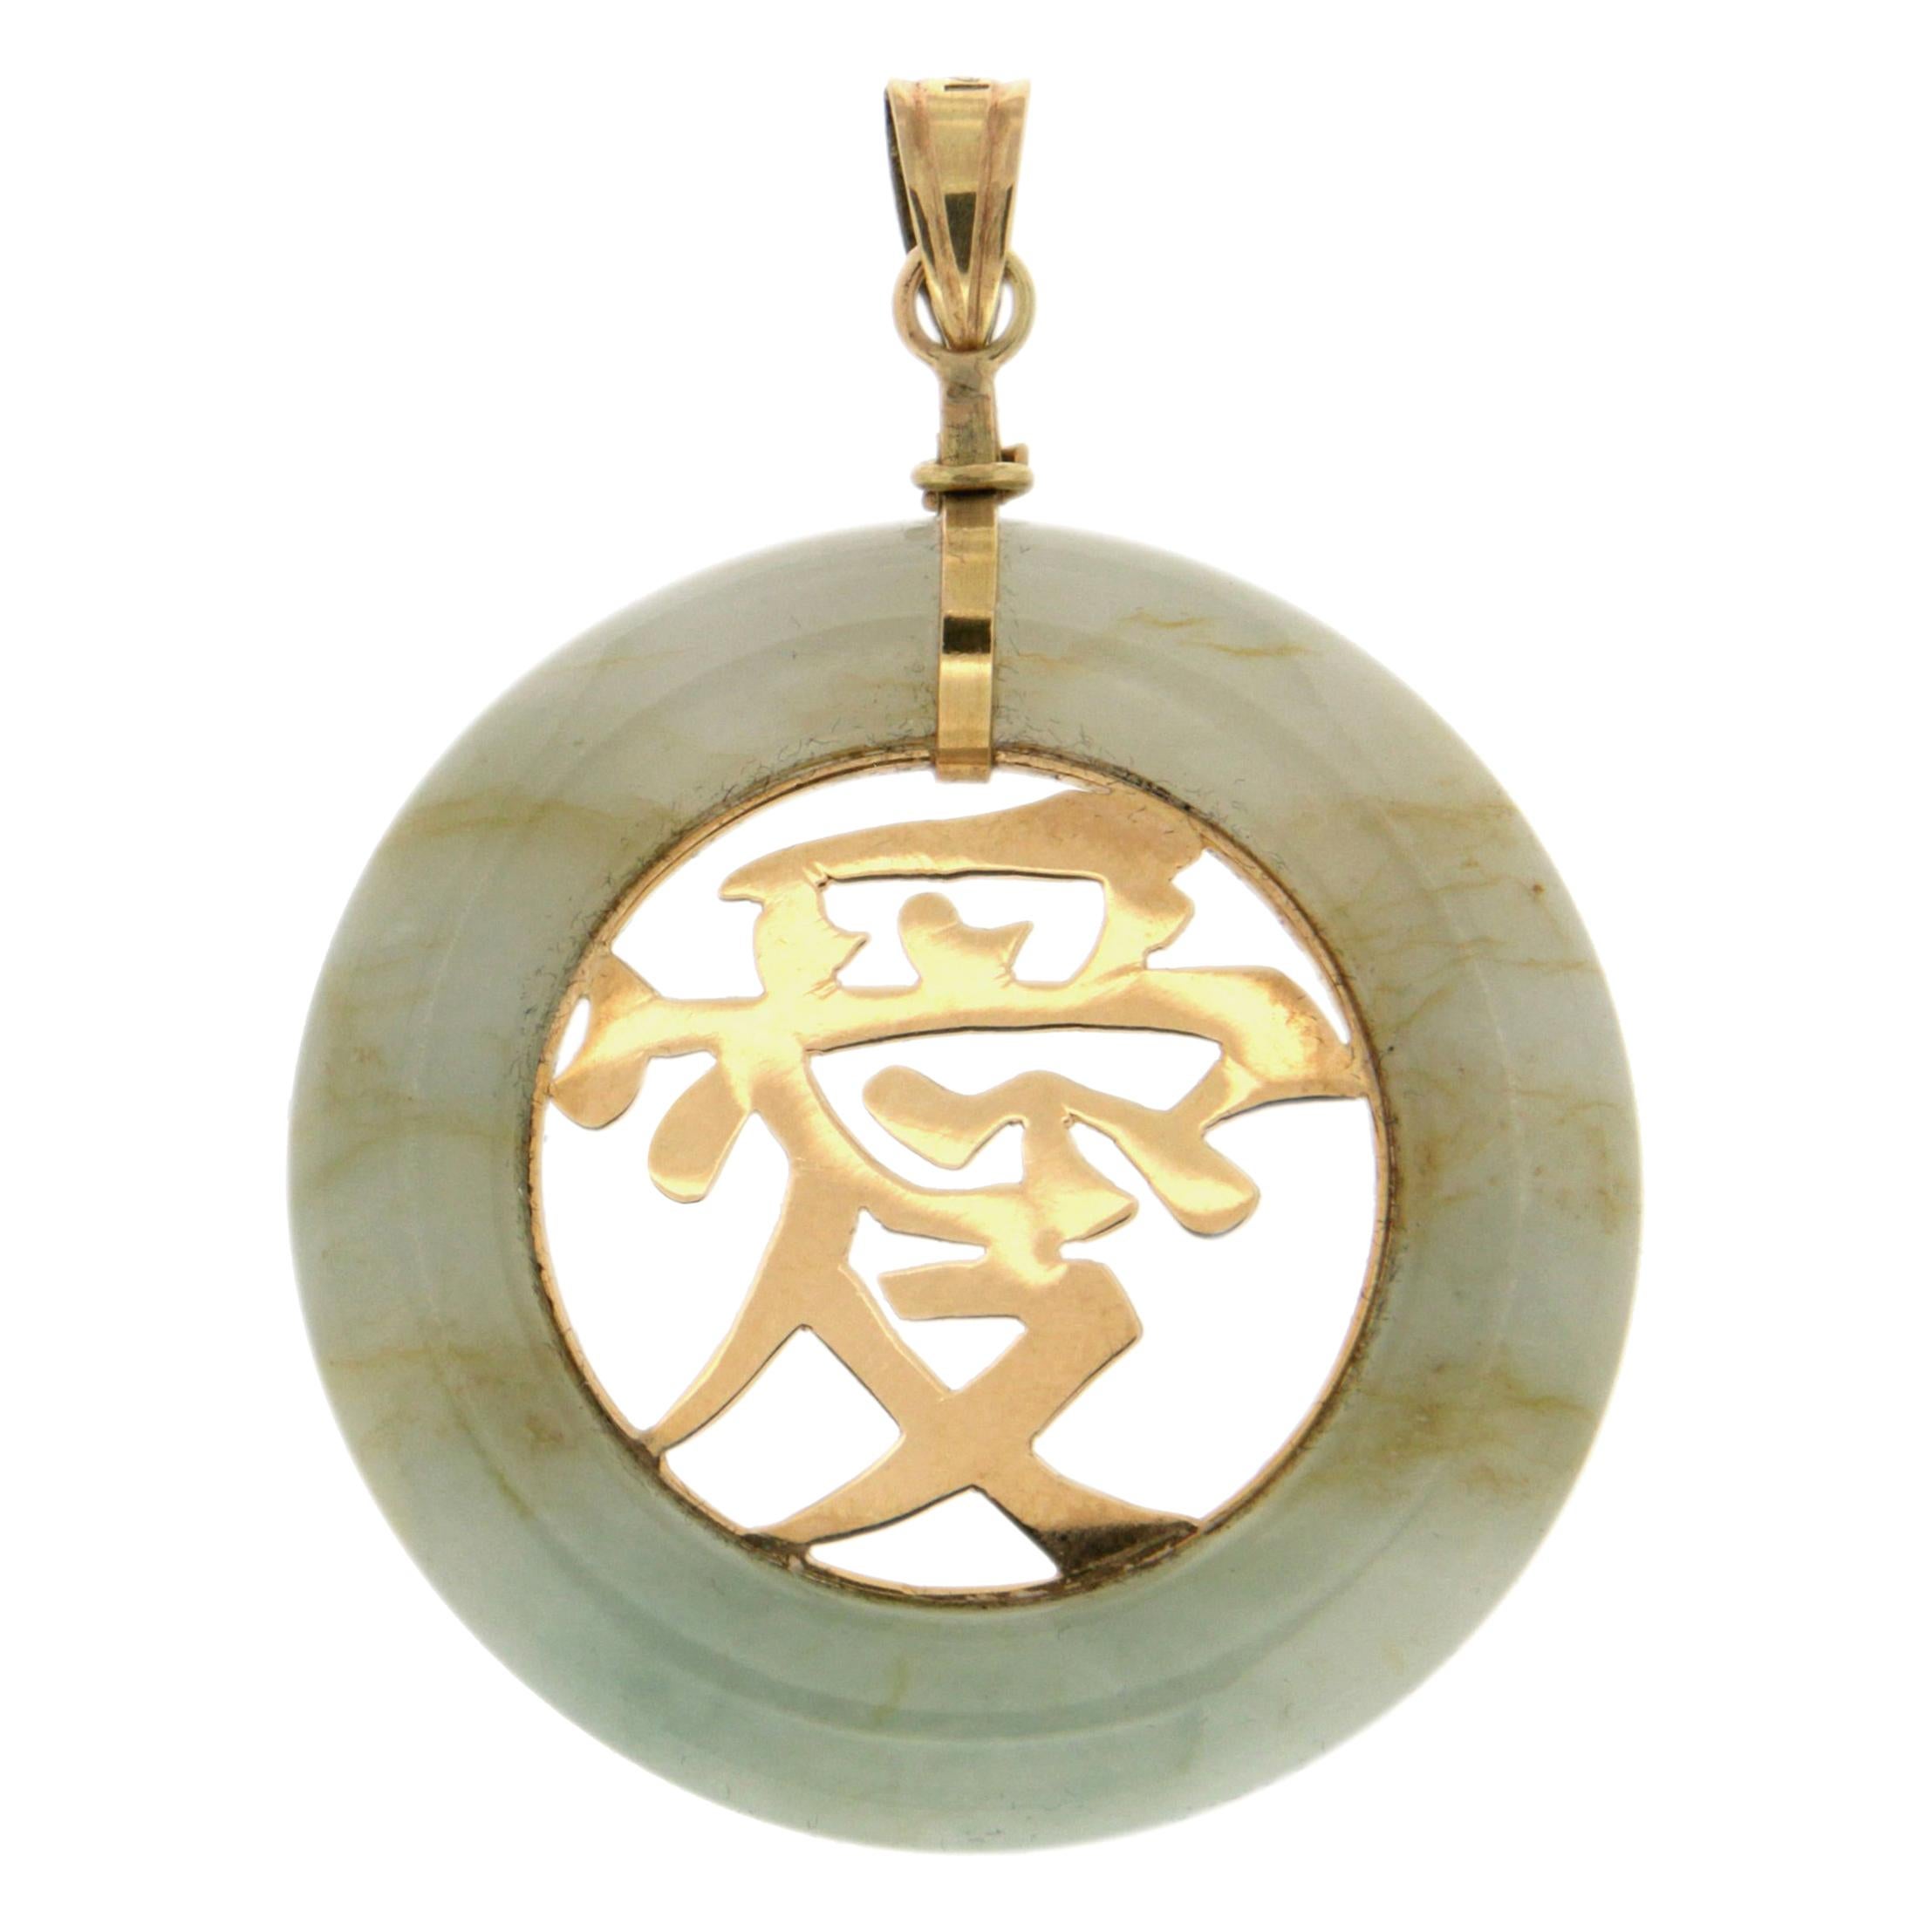 Handcraft 14 Karat Yellow Gold Jade Pendant Necklace